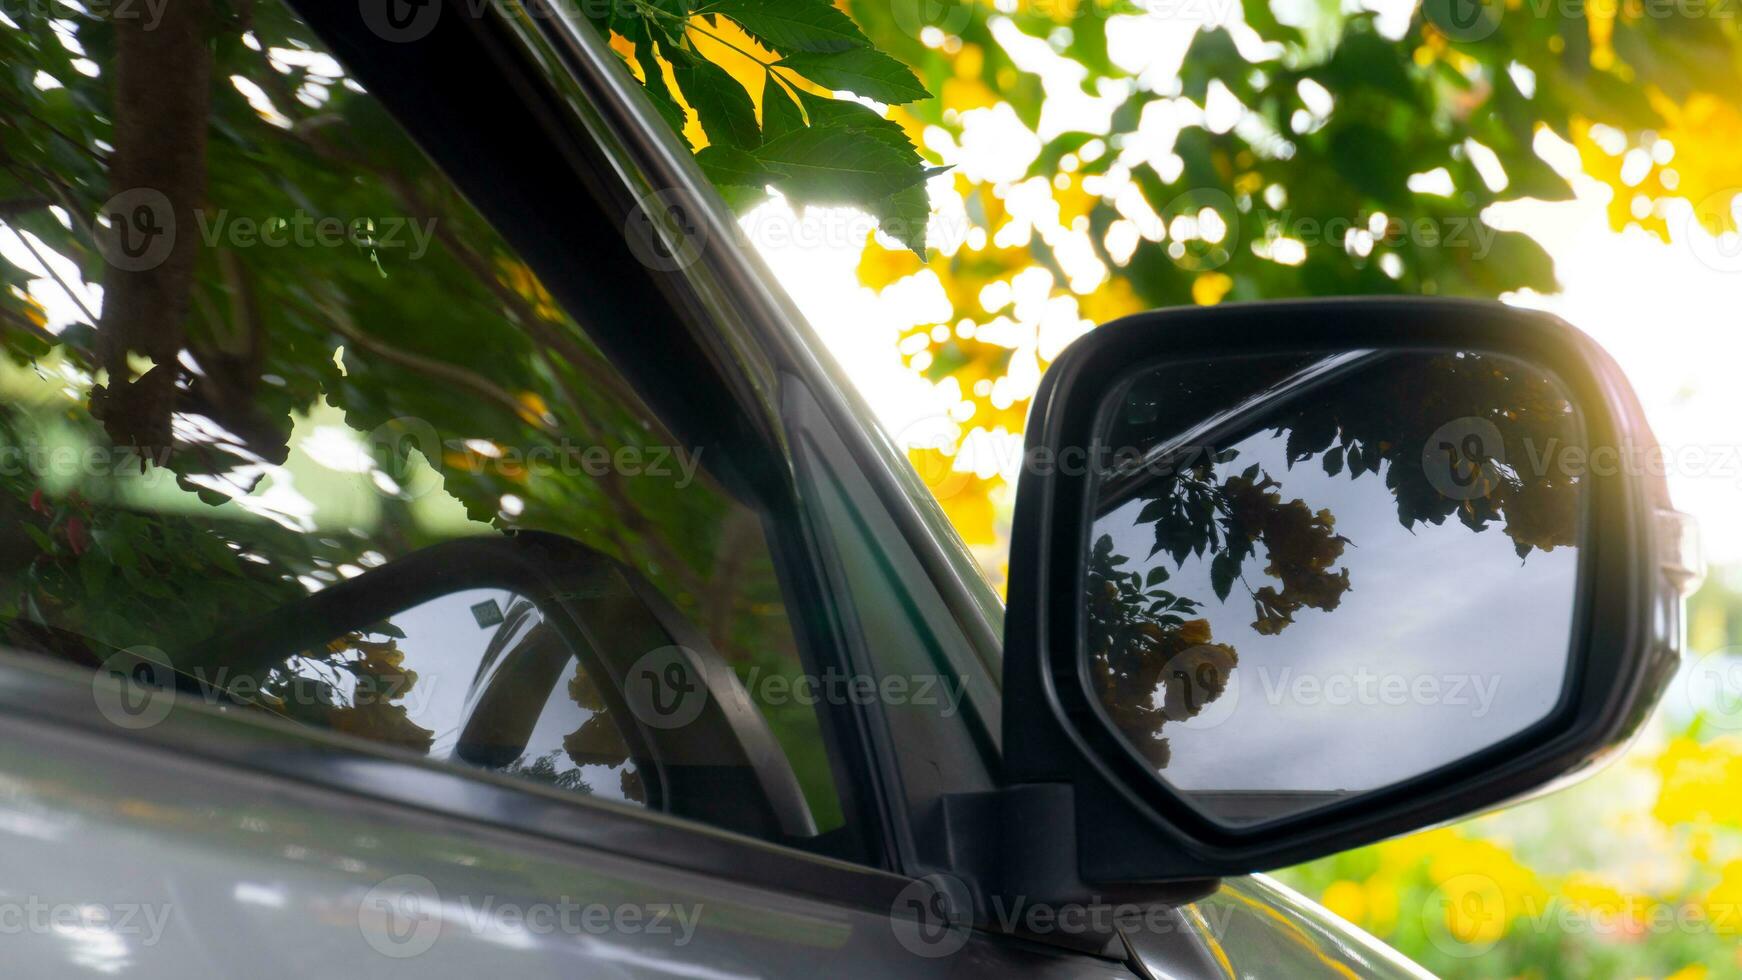 spiegel vleugel van auto parkeren onder van yello in de bries met zonlicht. foto